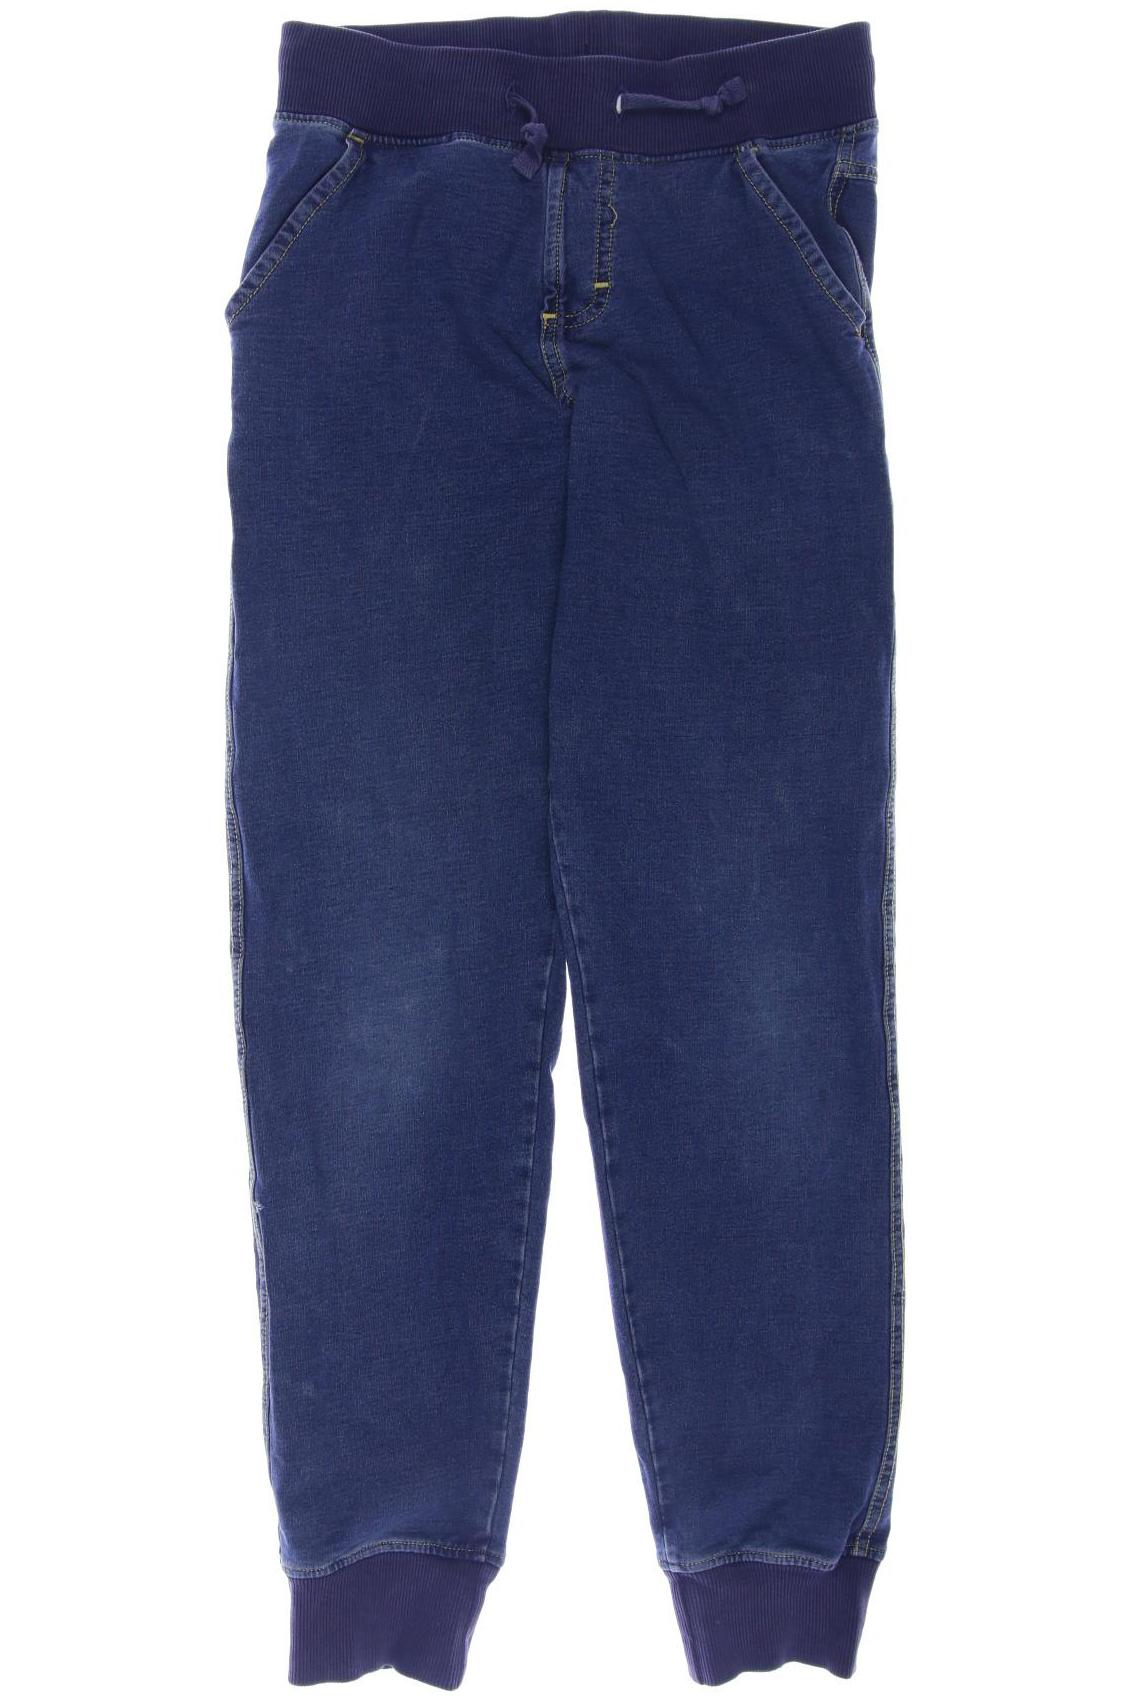 Maxomorra Herren Jeans, blau, Gr. 134 von Maxomorra